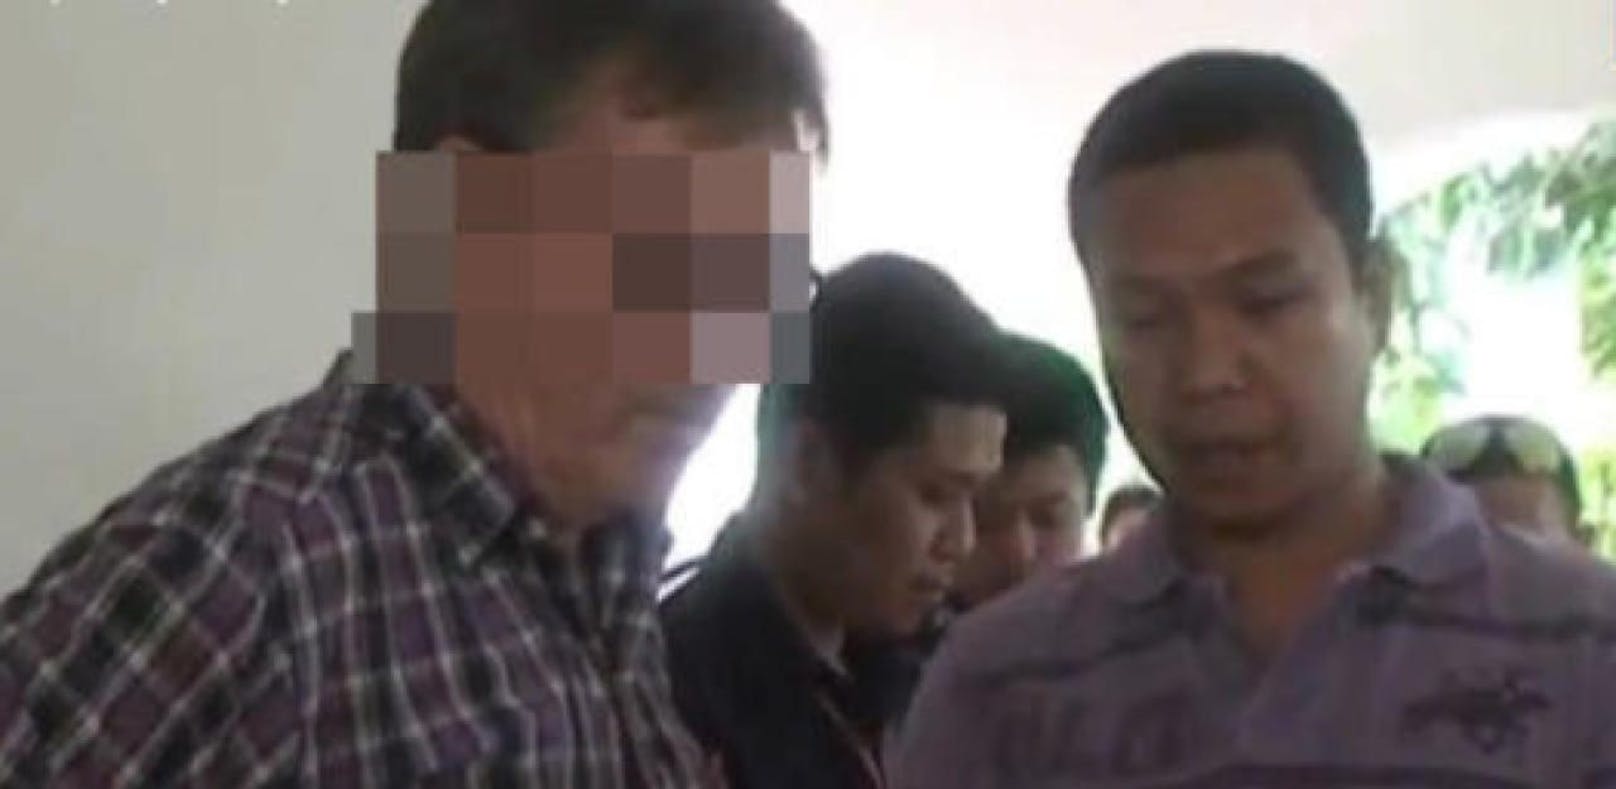 Robert T. steht in der Schweiz vor Gericht. Die Aufnahme stammt von seiner Verhaftung in Thailand. (Bild: Screenshot Pattayadailynews.com)